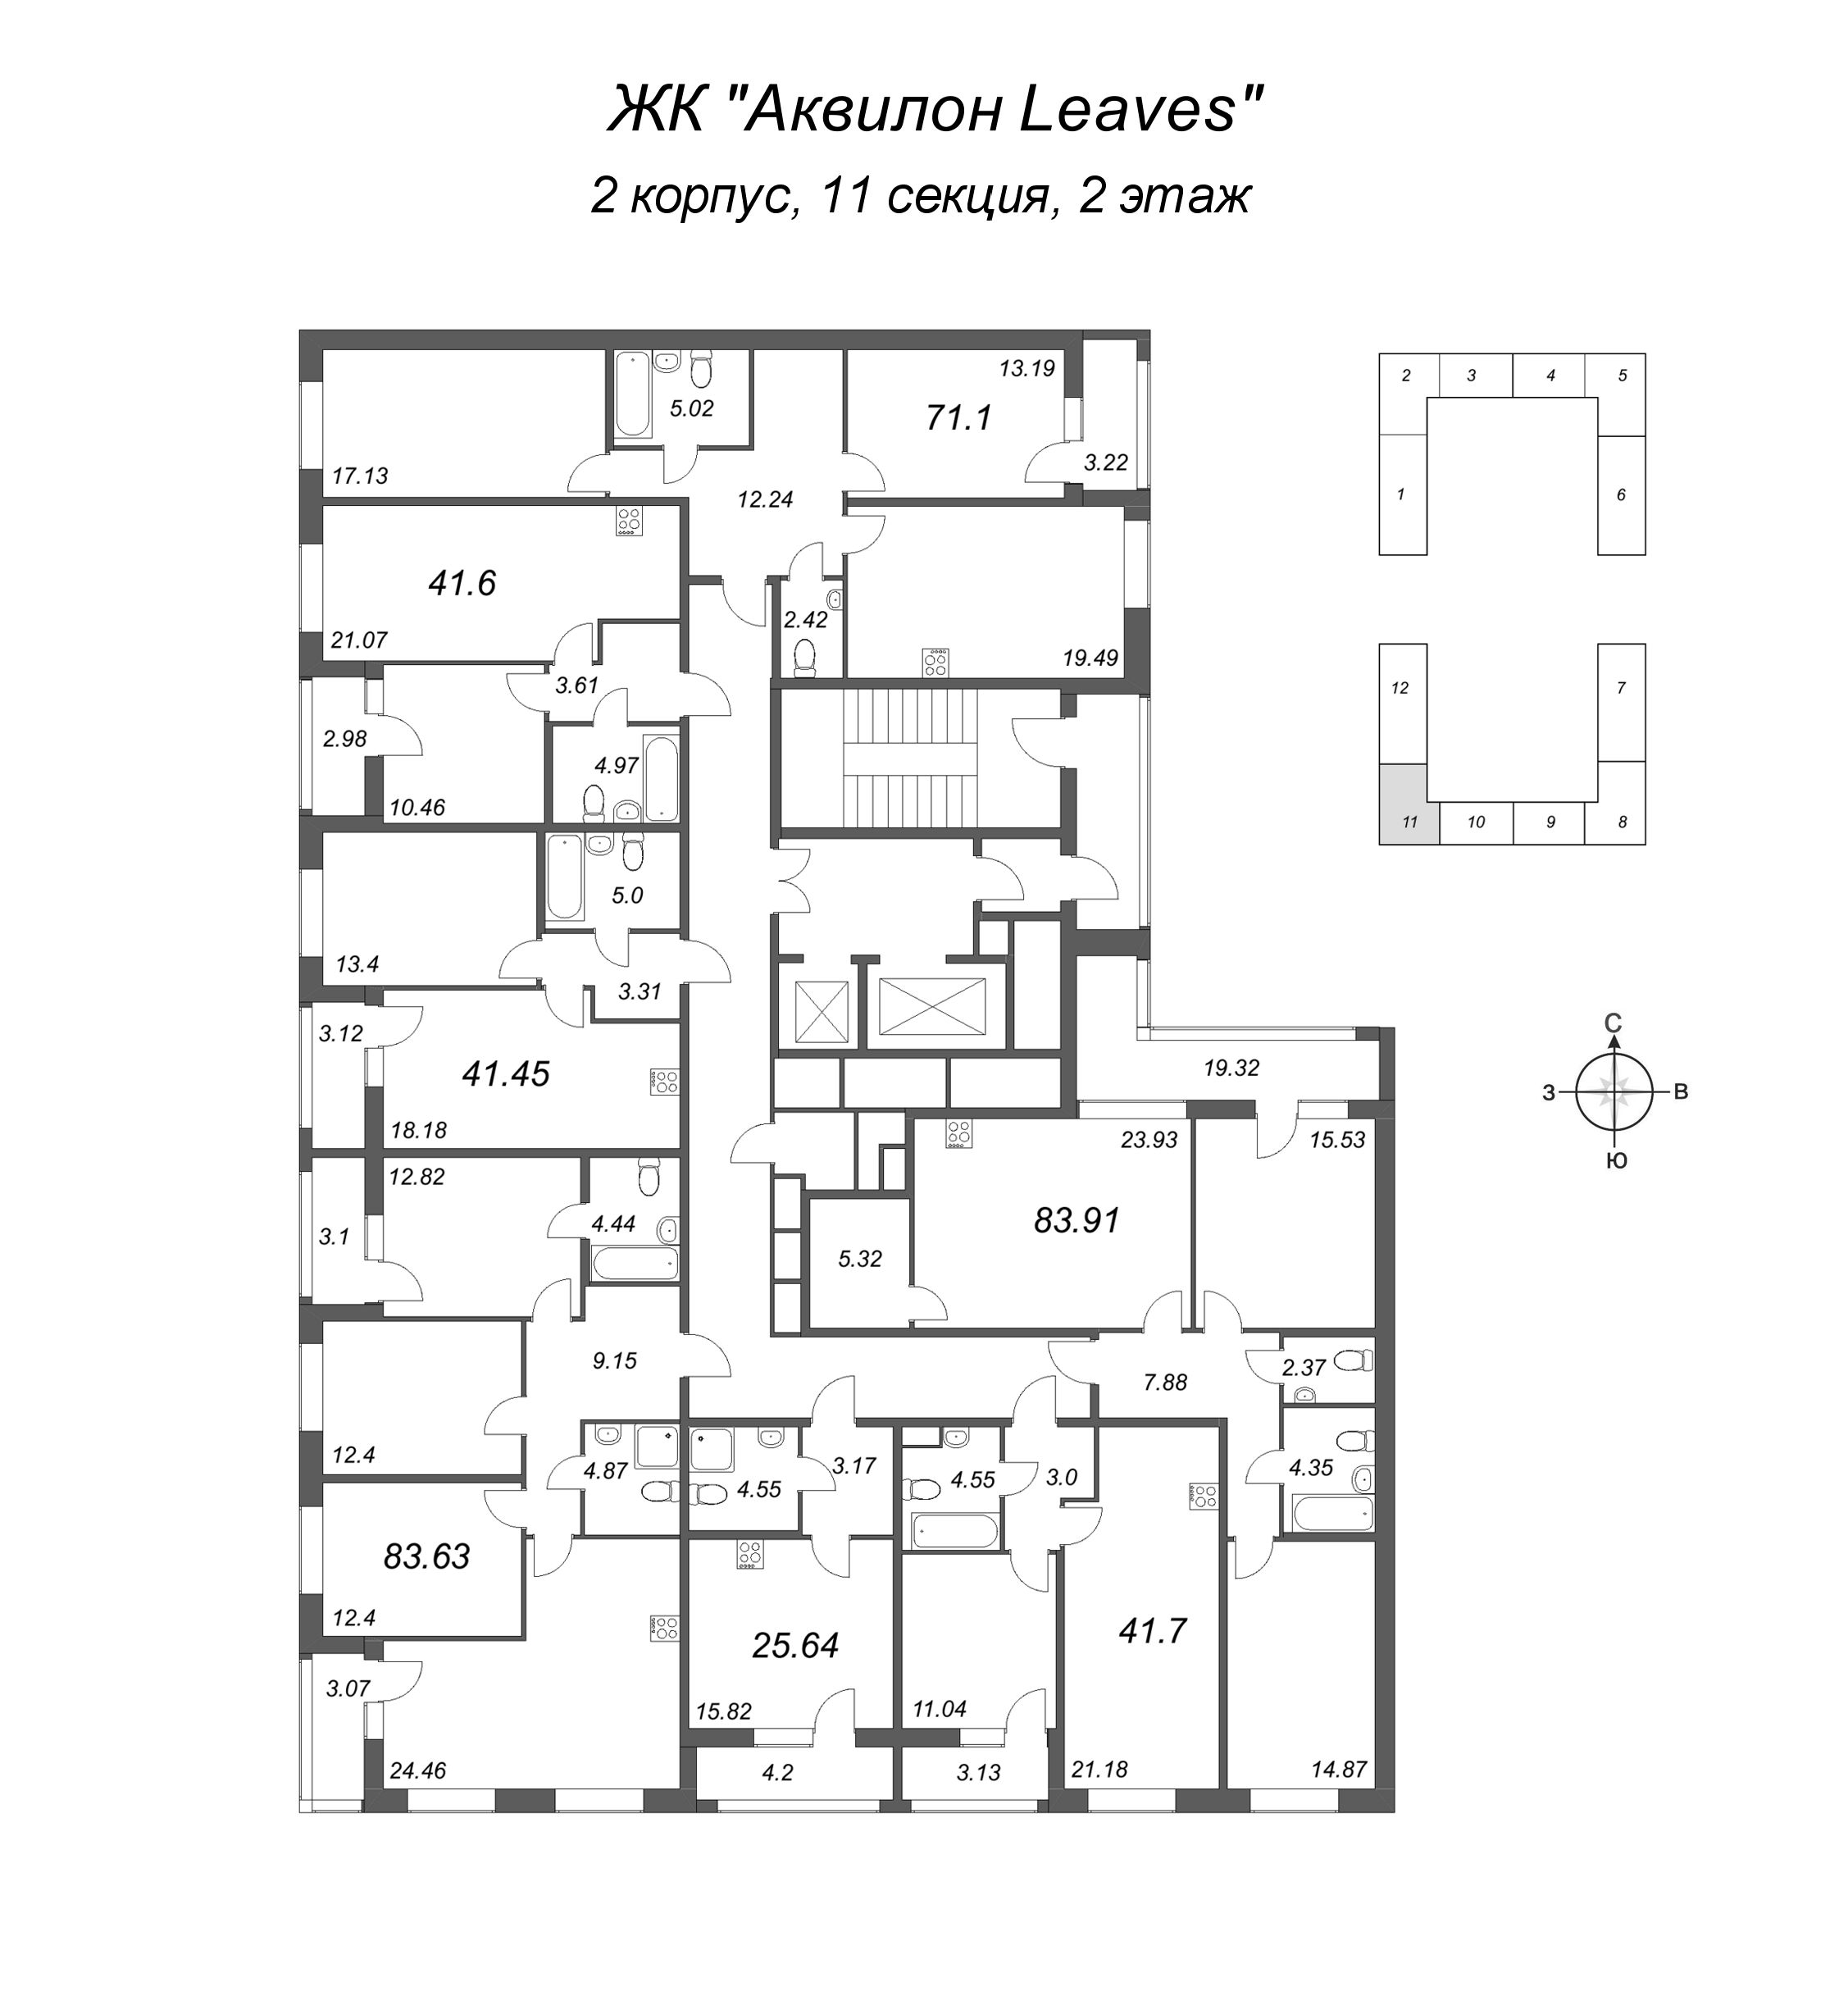 2-комнатная (Евро) квартира, 41.45 м² в ЖК "Аквилон Leaves" - планировка этажа